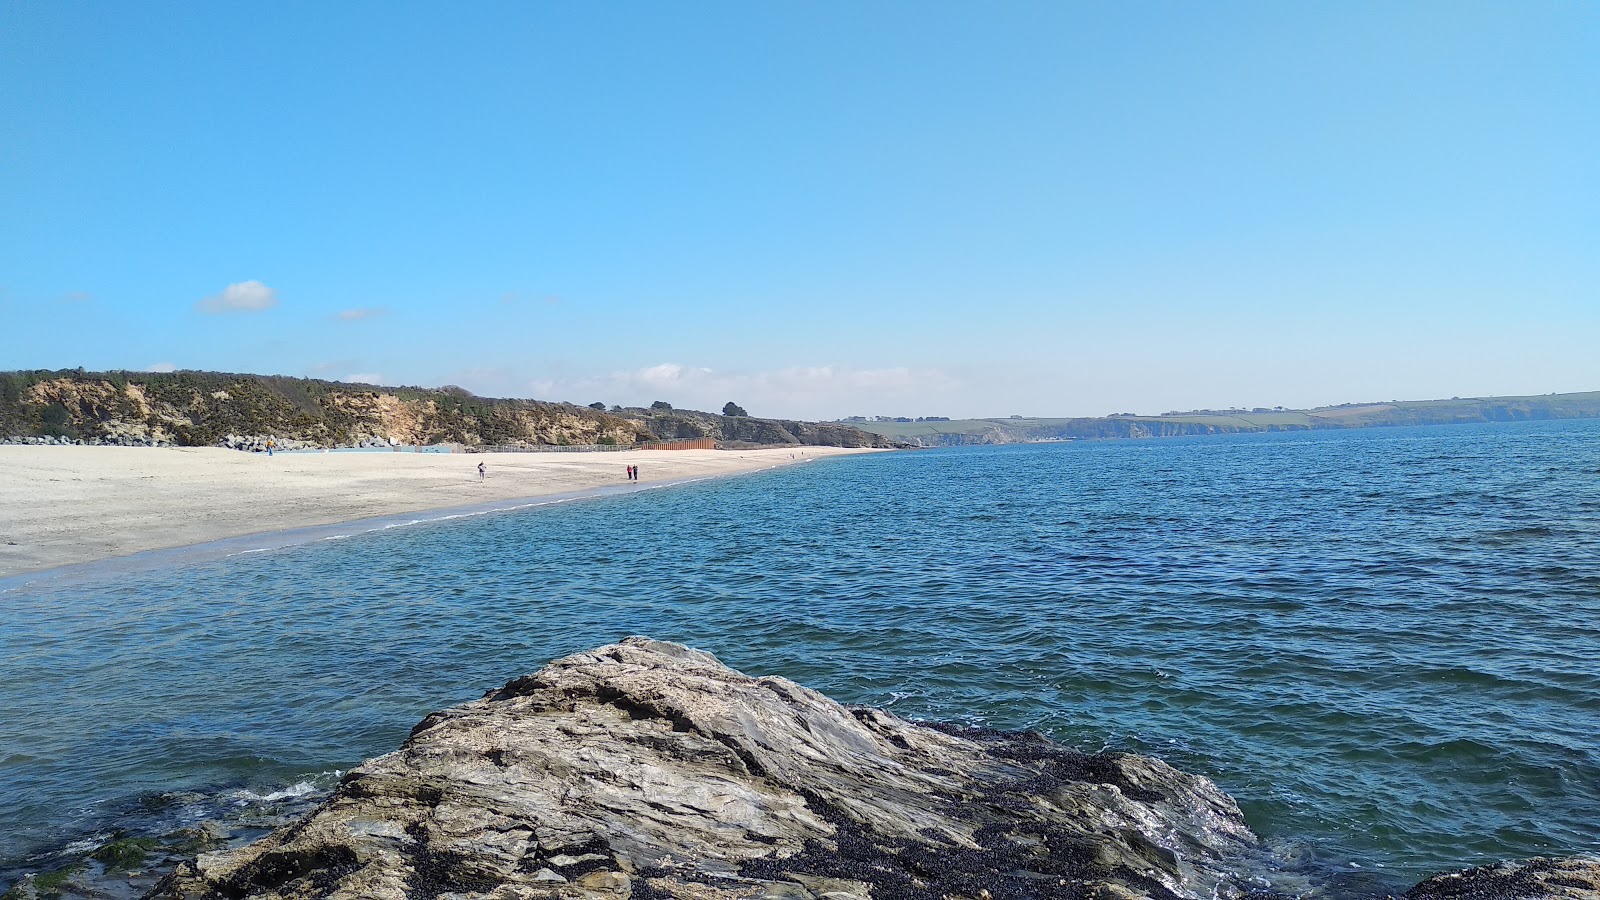 Foto de Carlyon beach - lugar popular entre los conocedores del relax